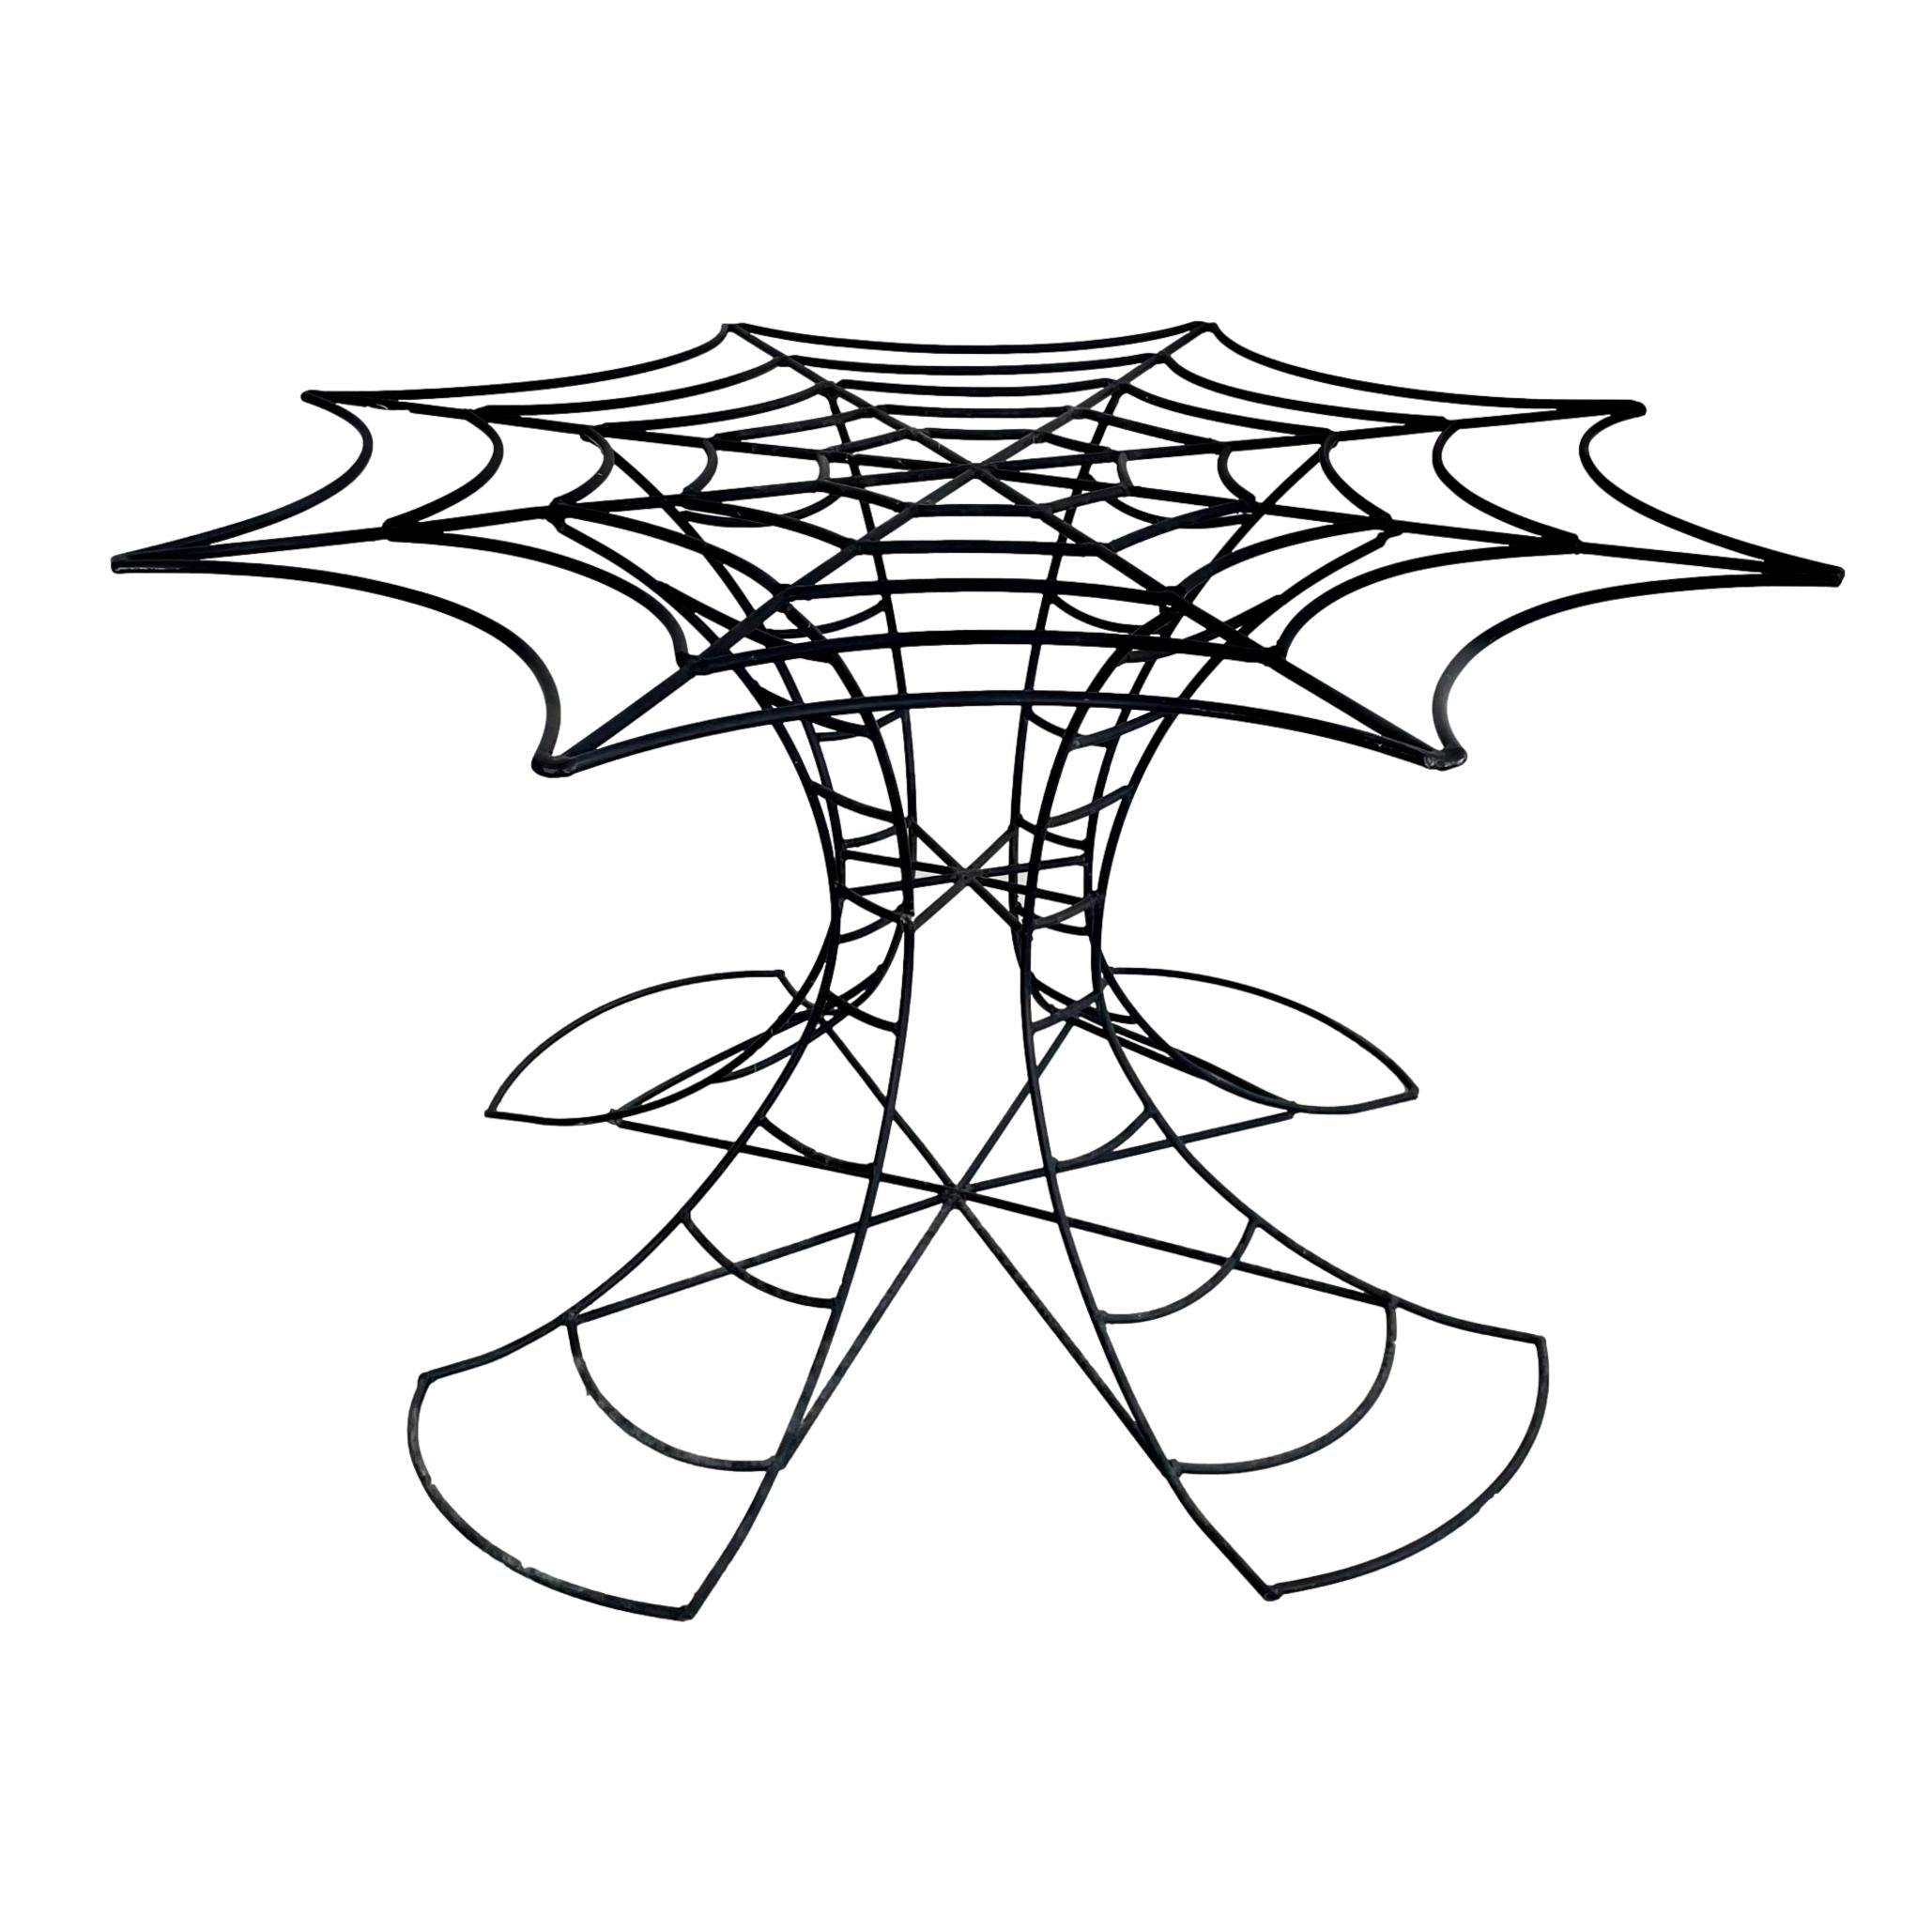 Metal Spider Web Table, 1980s USA